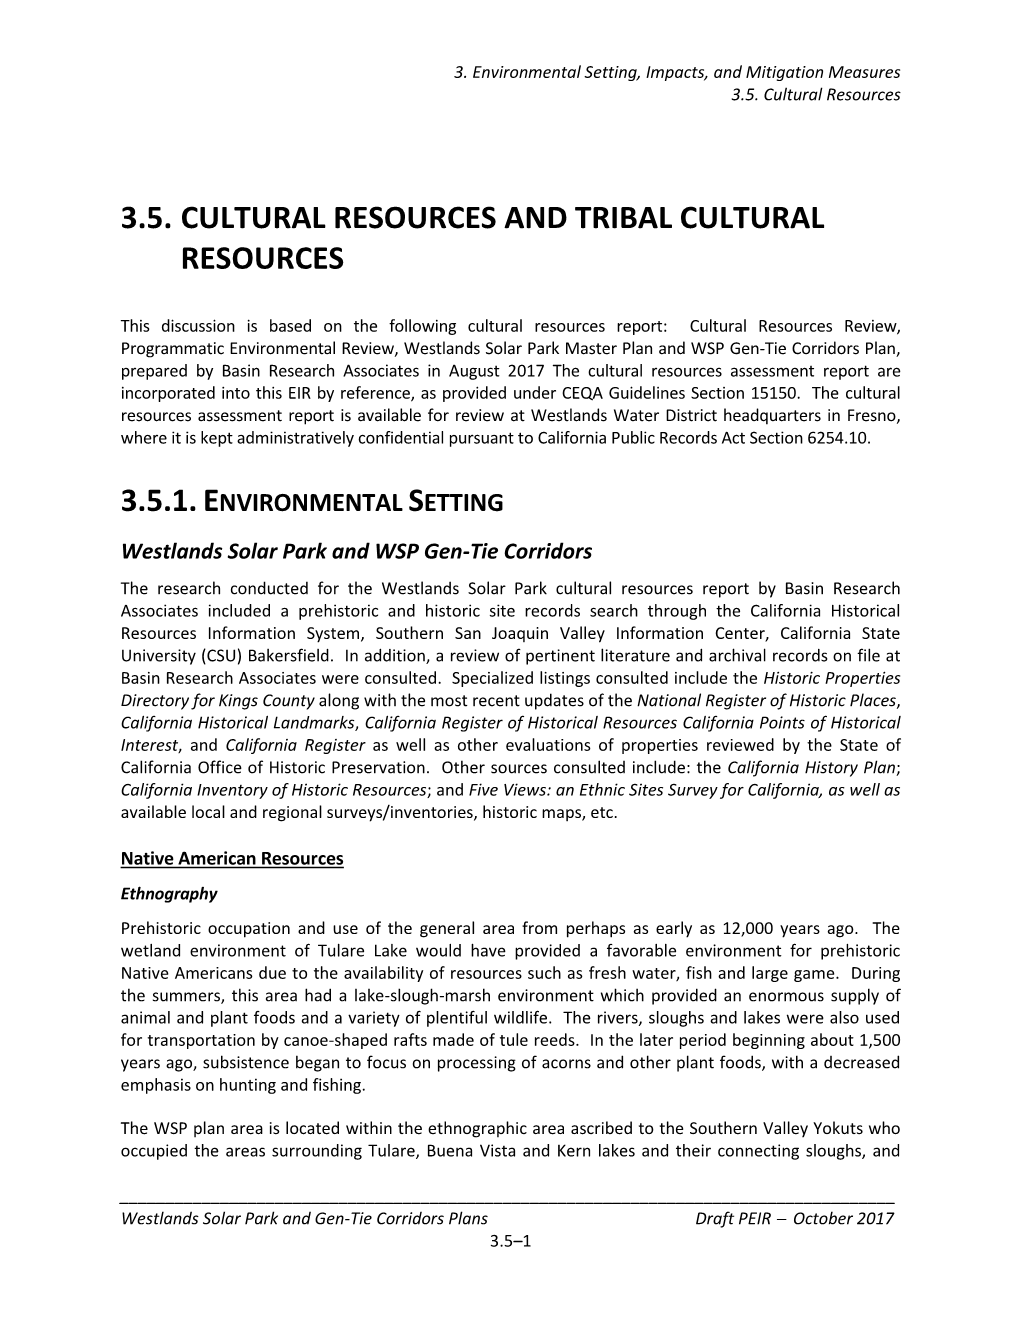 Cultural Resources